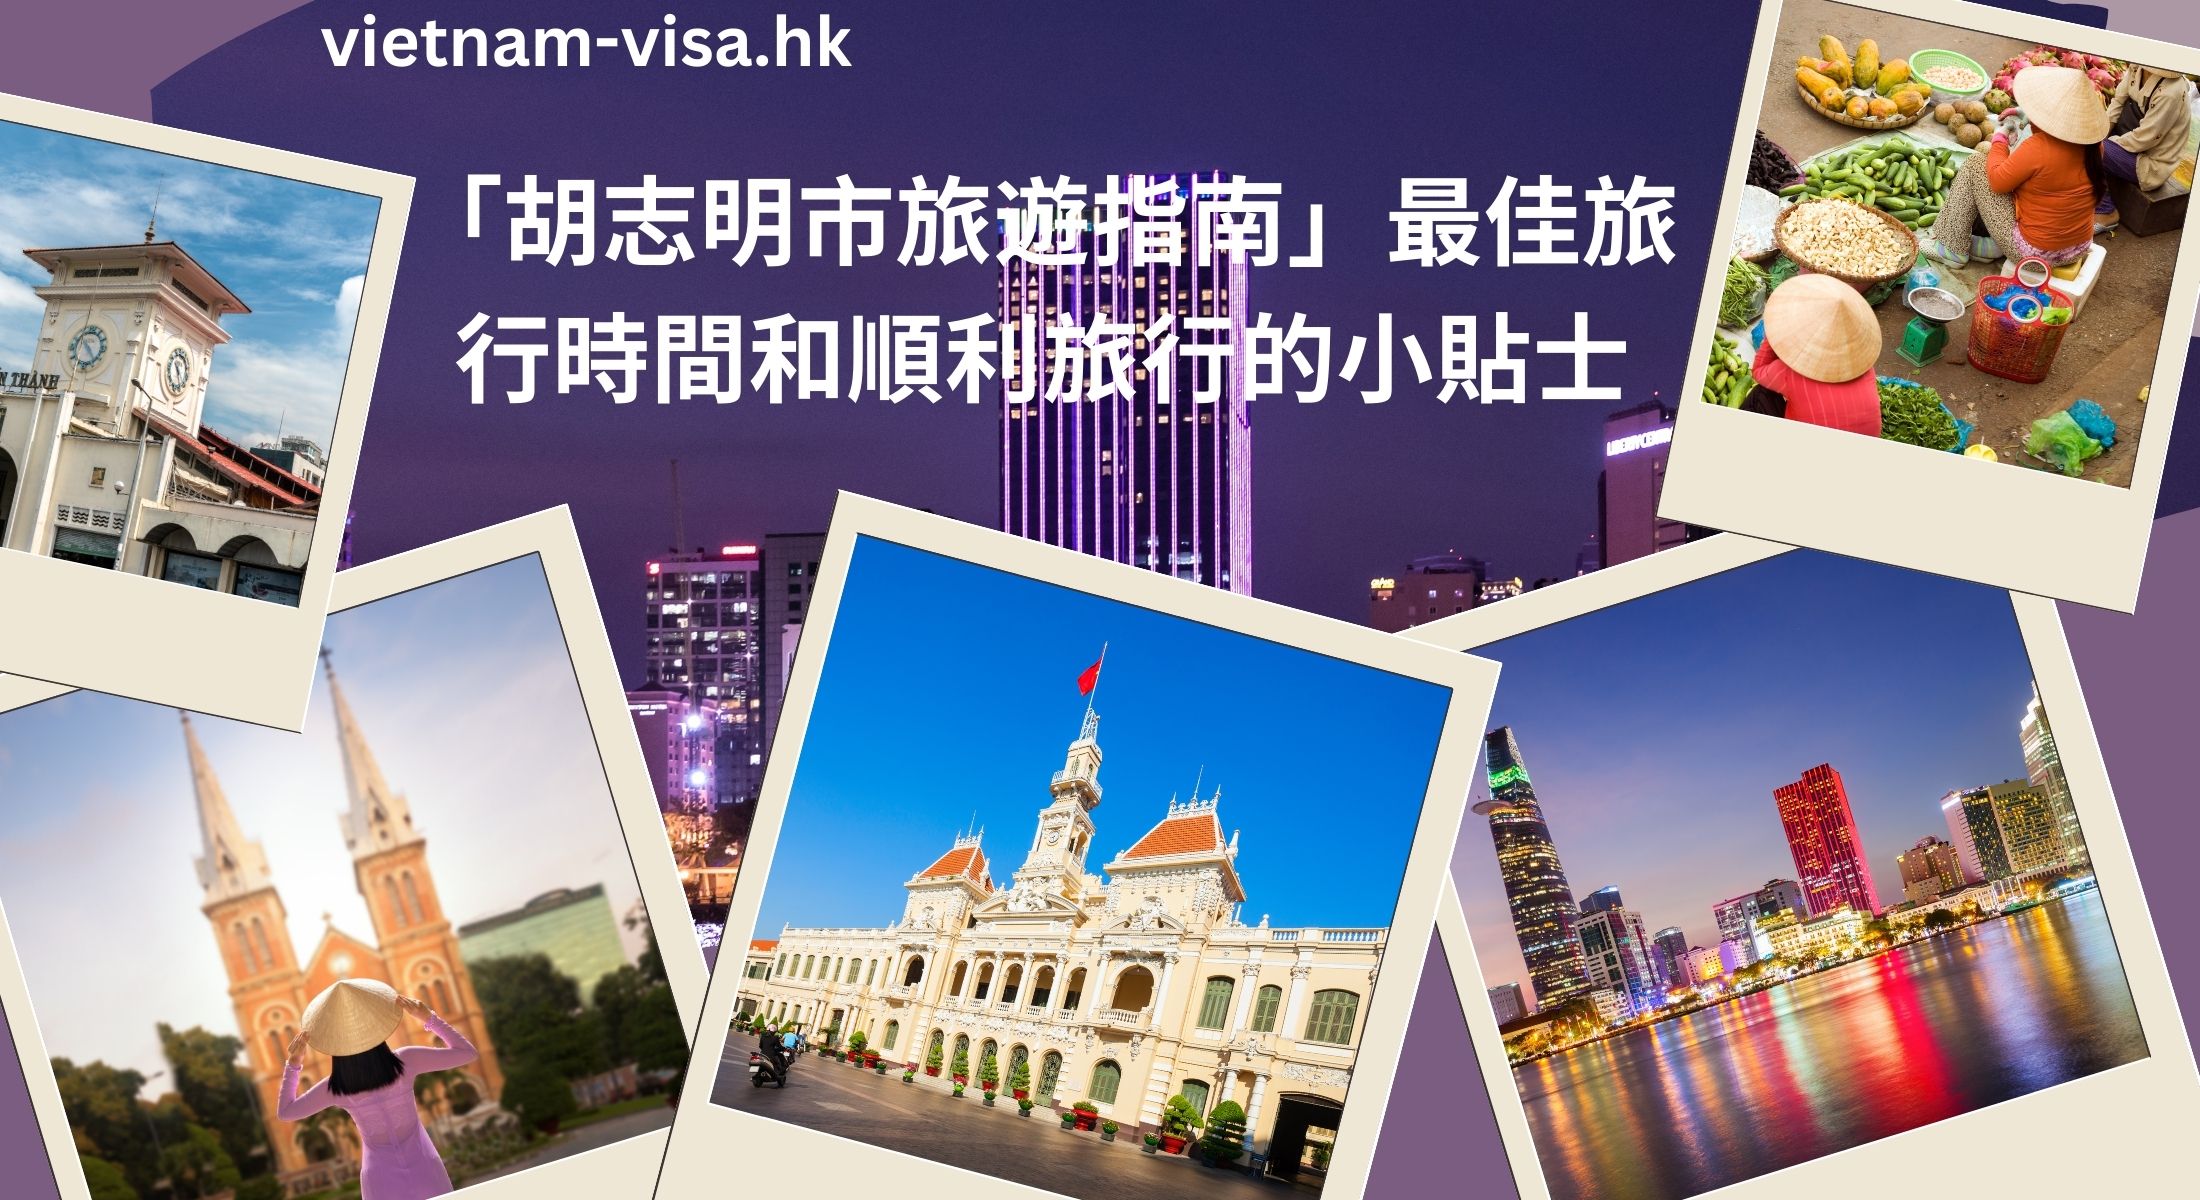 「胡志明市旅遊指南」最佳旅行時間和順利旅行的小貼士